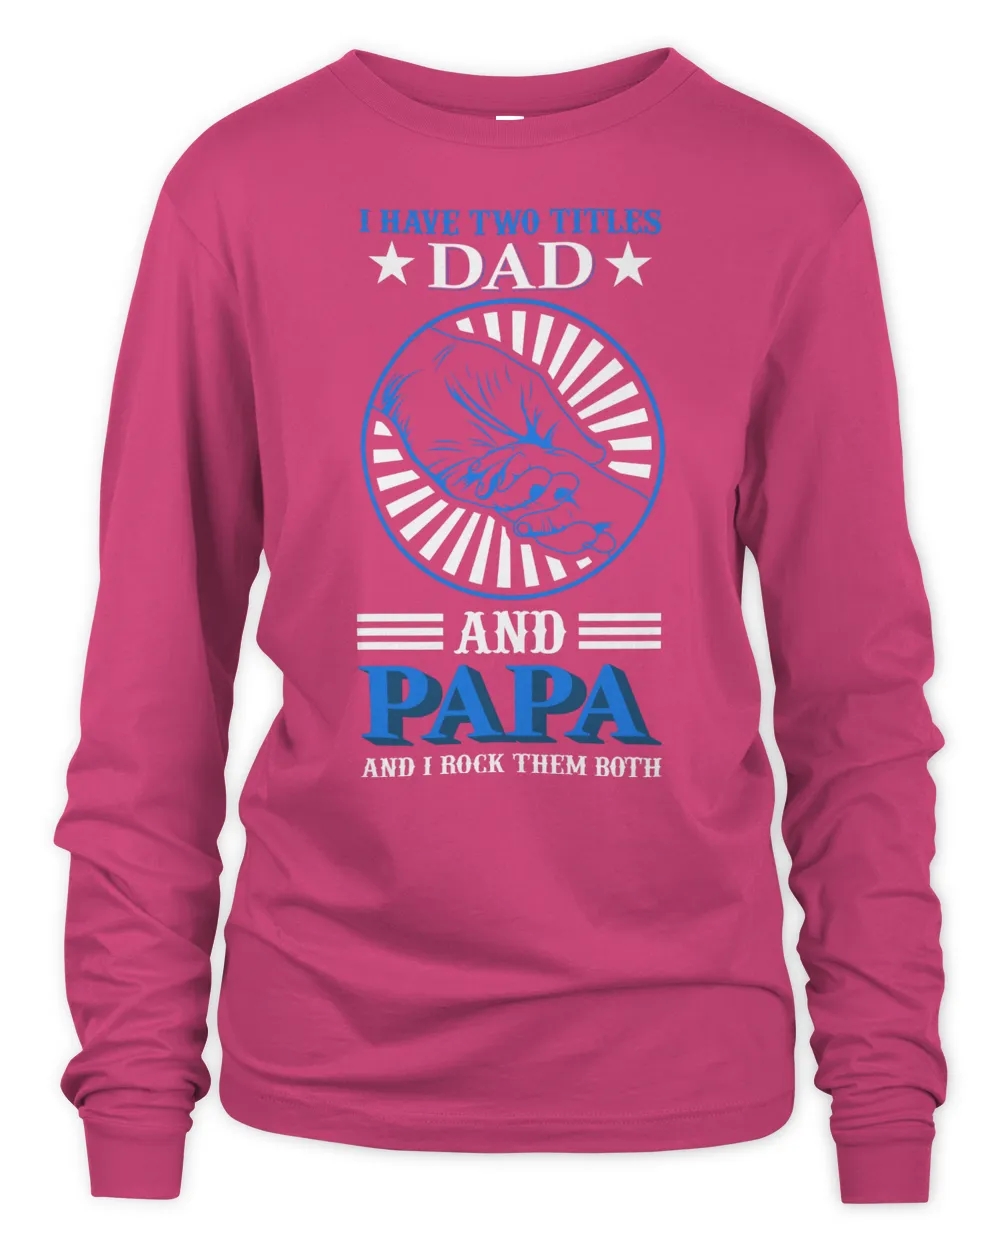 Father's Day Gifts, Father's Day Shirts, Father's Day Gift Ideas, Father's Day Gifts 2022, Gifts for Dad (76)